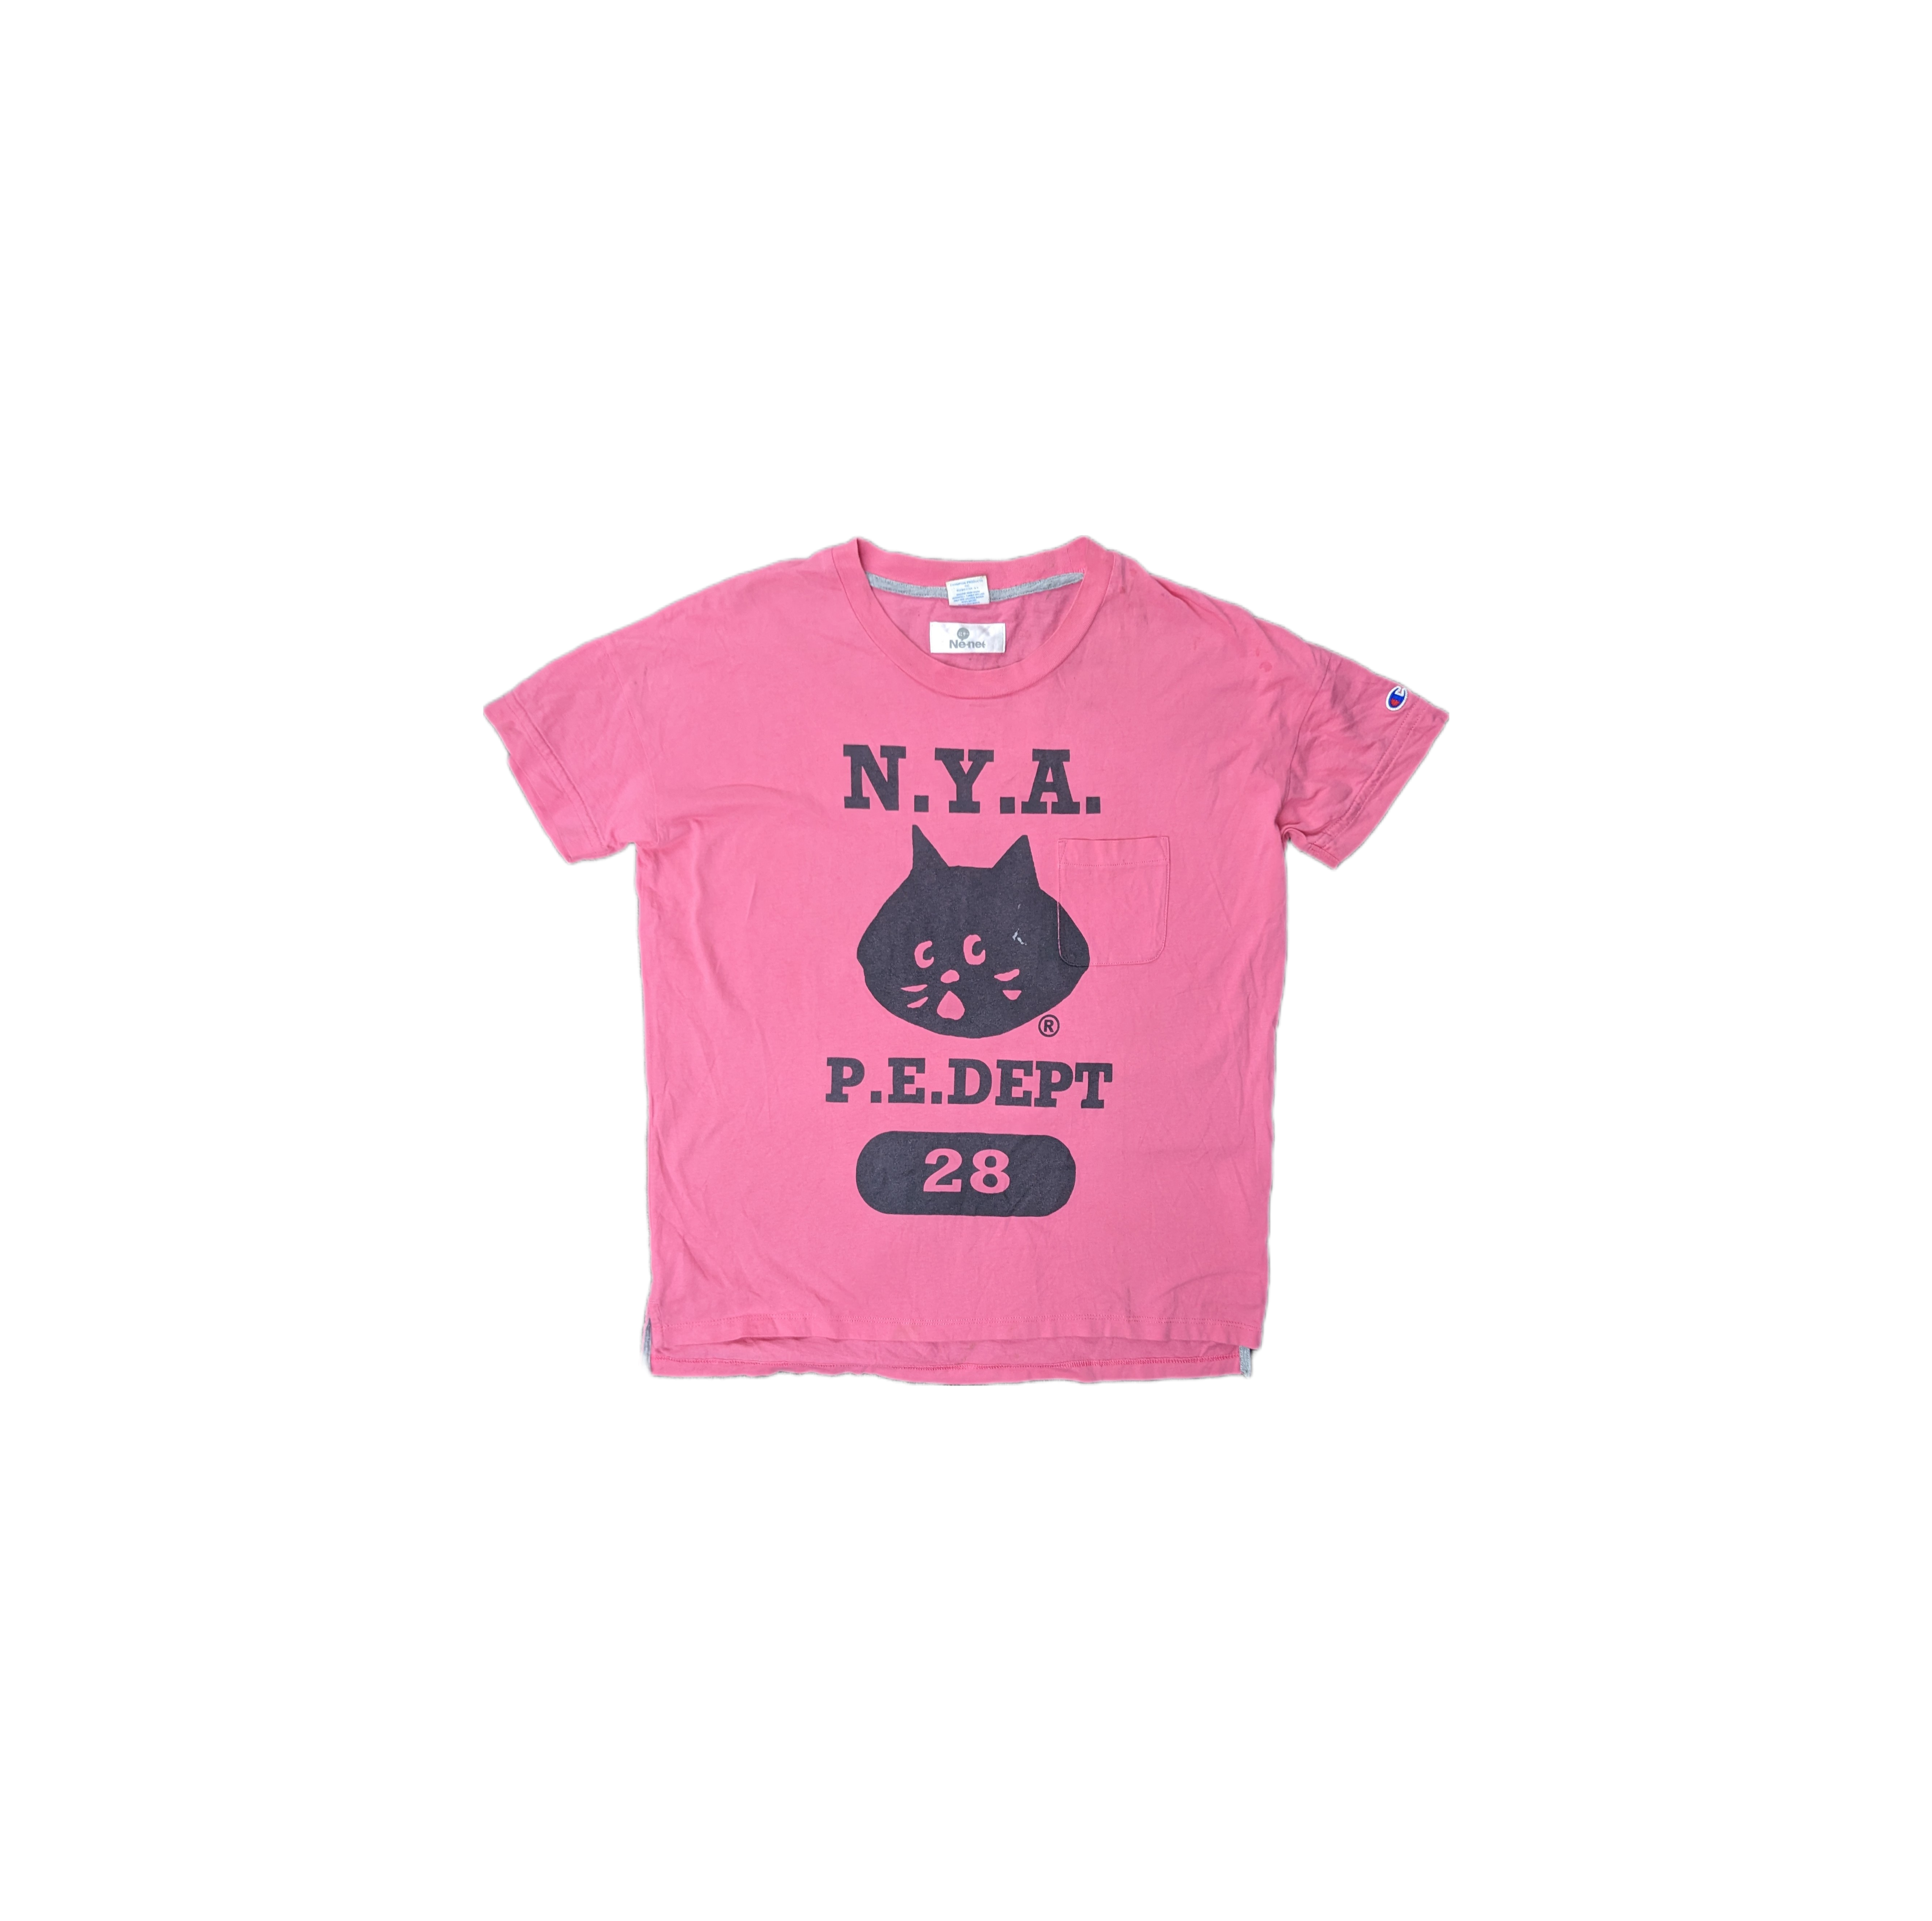 Ne-net x champion tshirt - 1